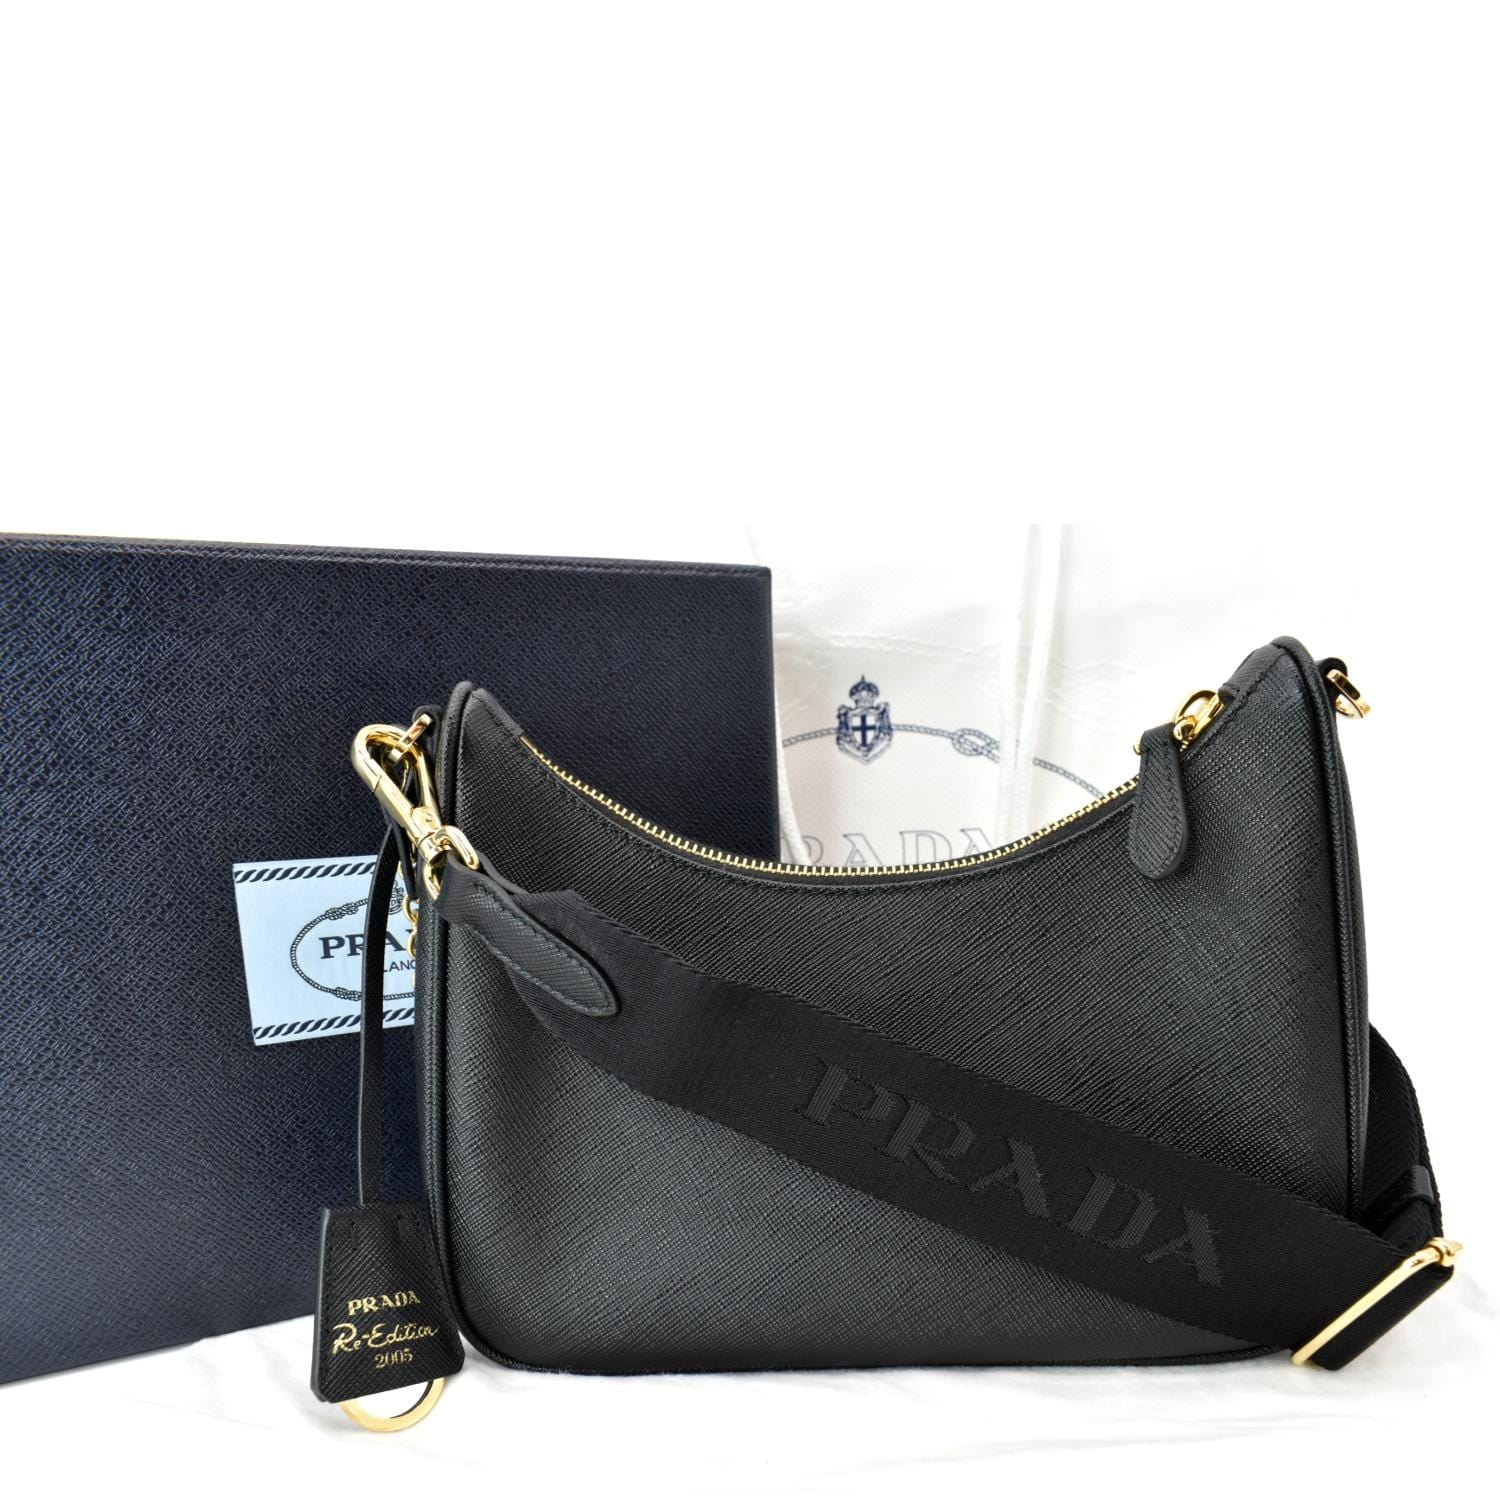 Prada Prada Re-Edition 2005 Saffiano leather bag Shoulder